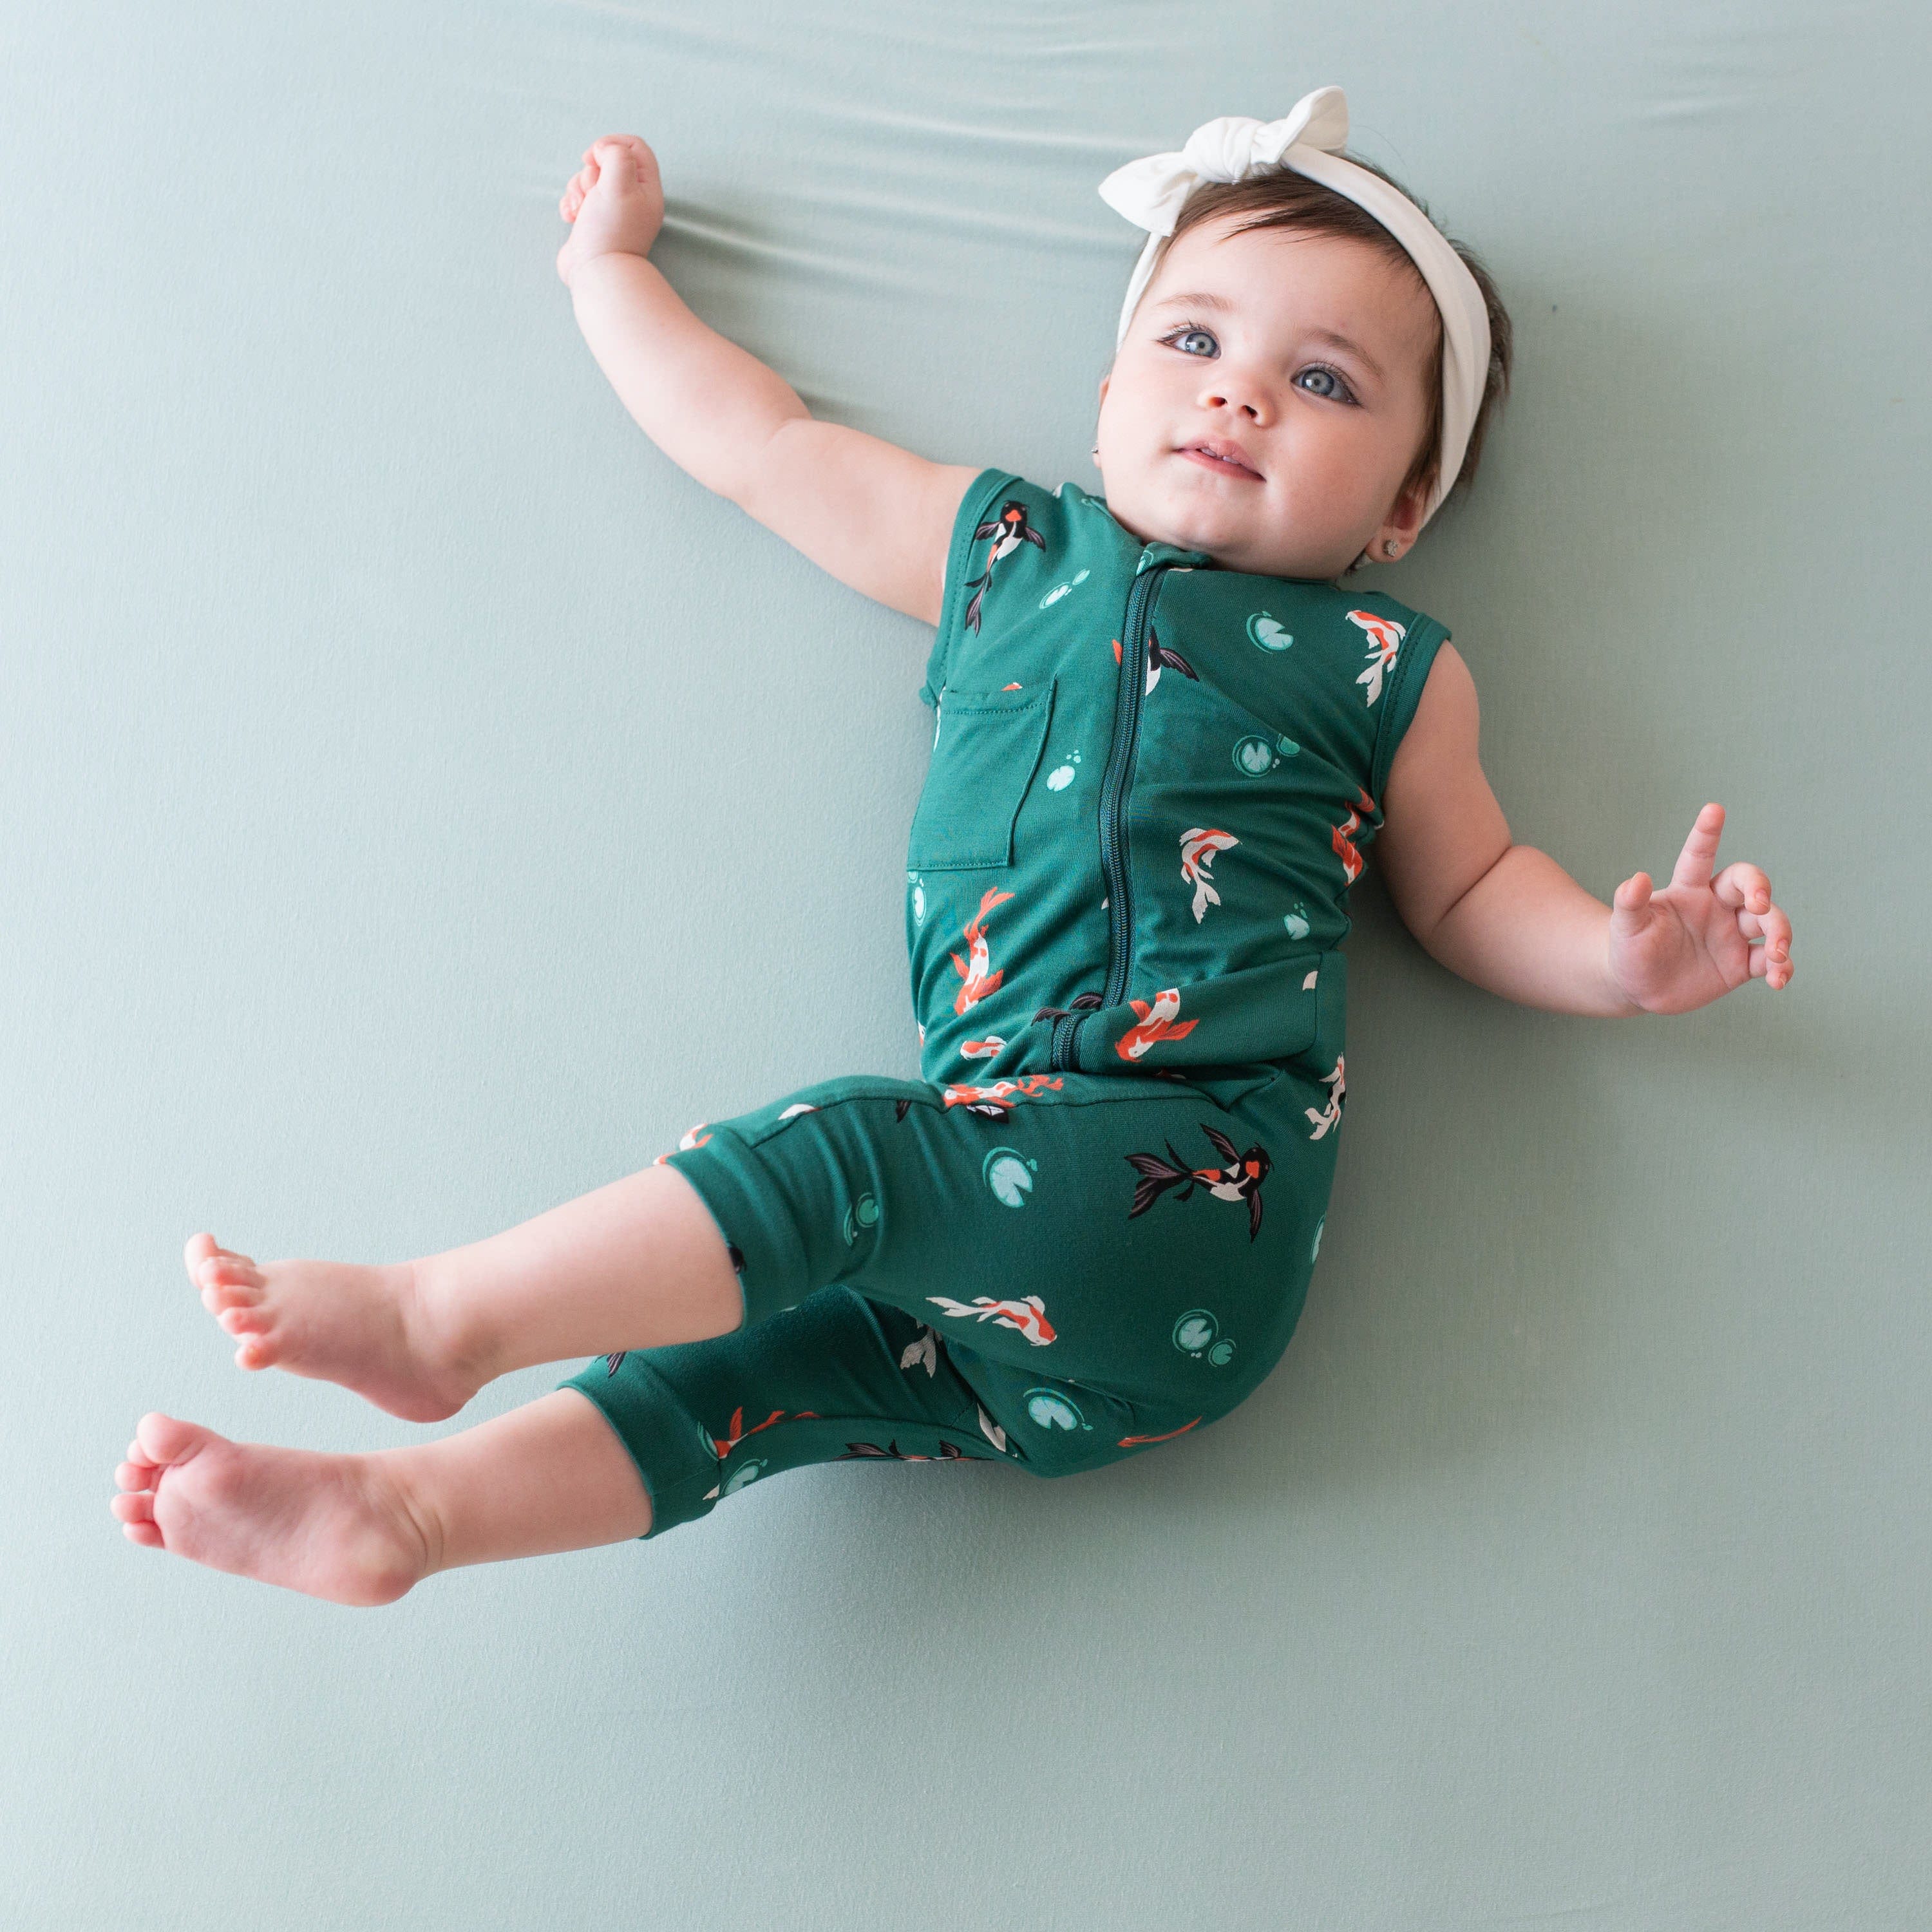 Infant wearing Kyte Baby Zippered Sleeveless Romper in Koi